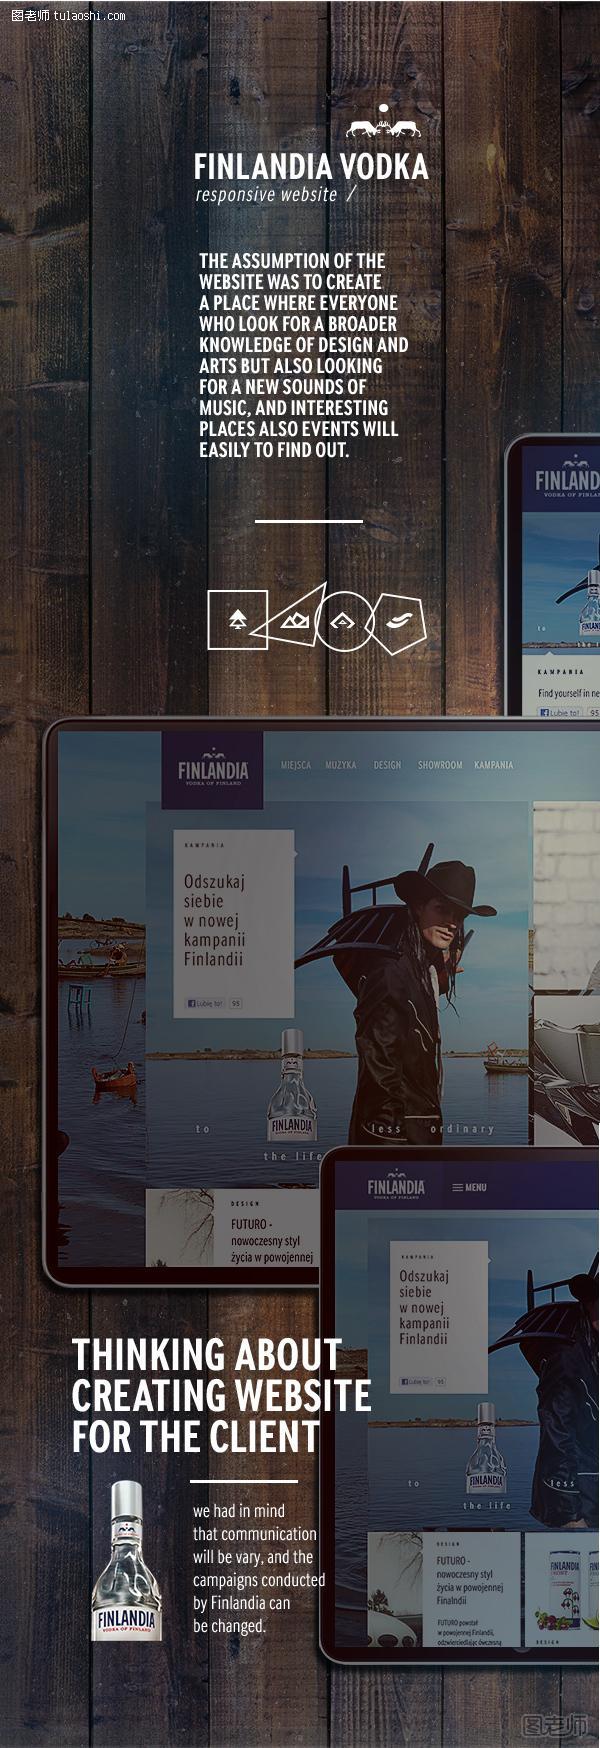 Finland Vodka 平面设计网页设计作品